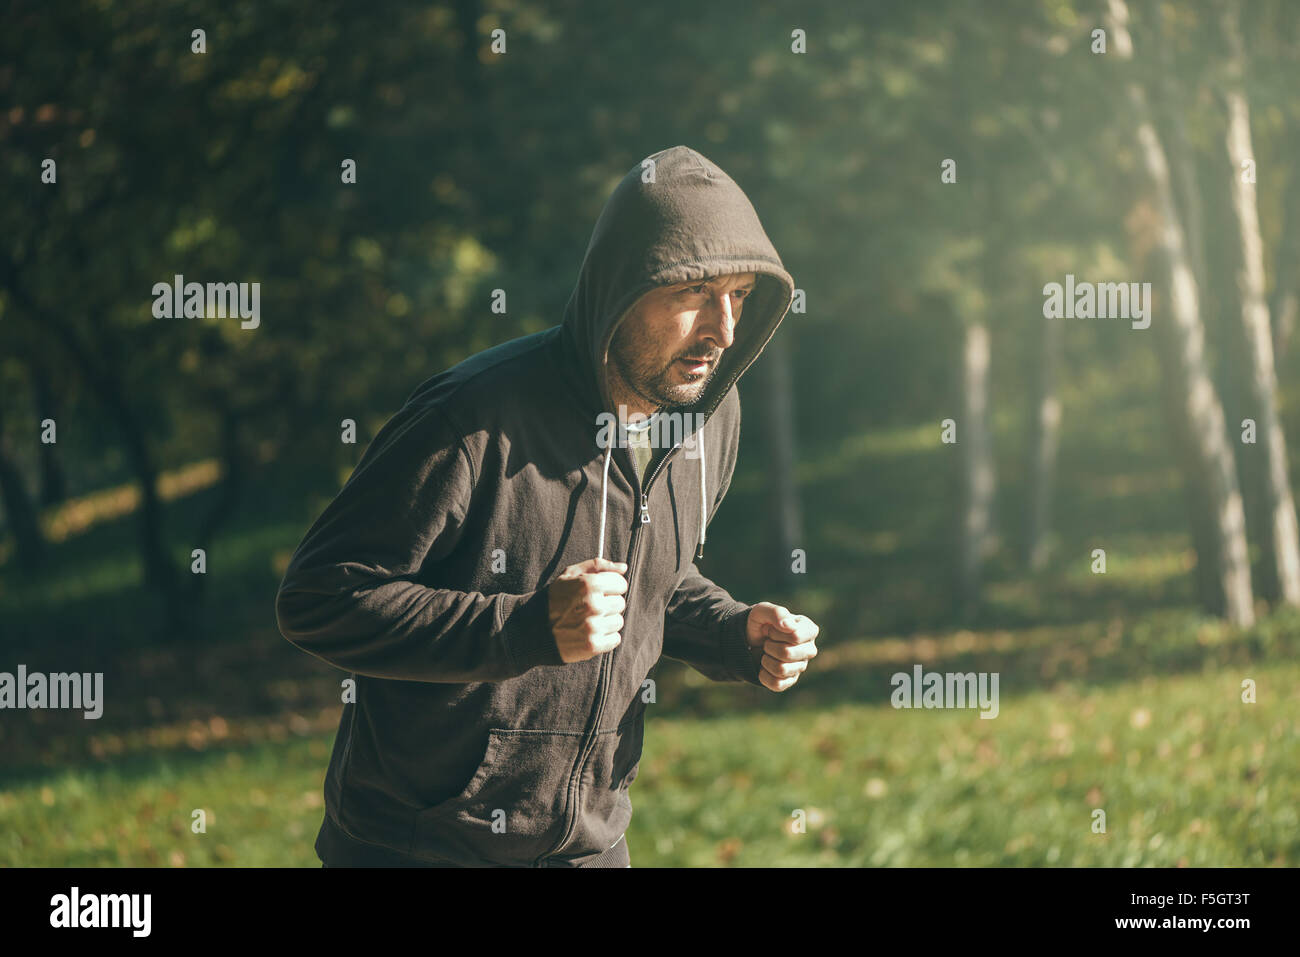 Vermummte Mann Joggen im Park im frühen Herbstmorgen, Sport, Erholung und gesunden Lifestyle-Konzept, Retro-getönten Bild mit Stockfoto